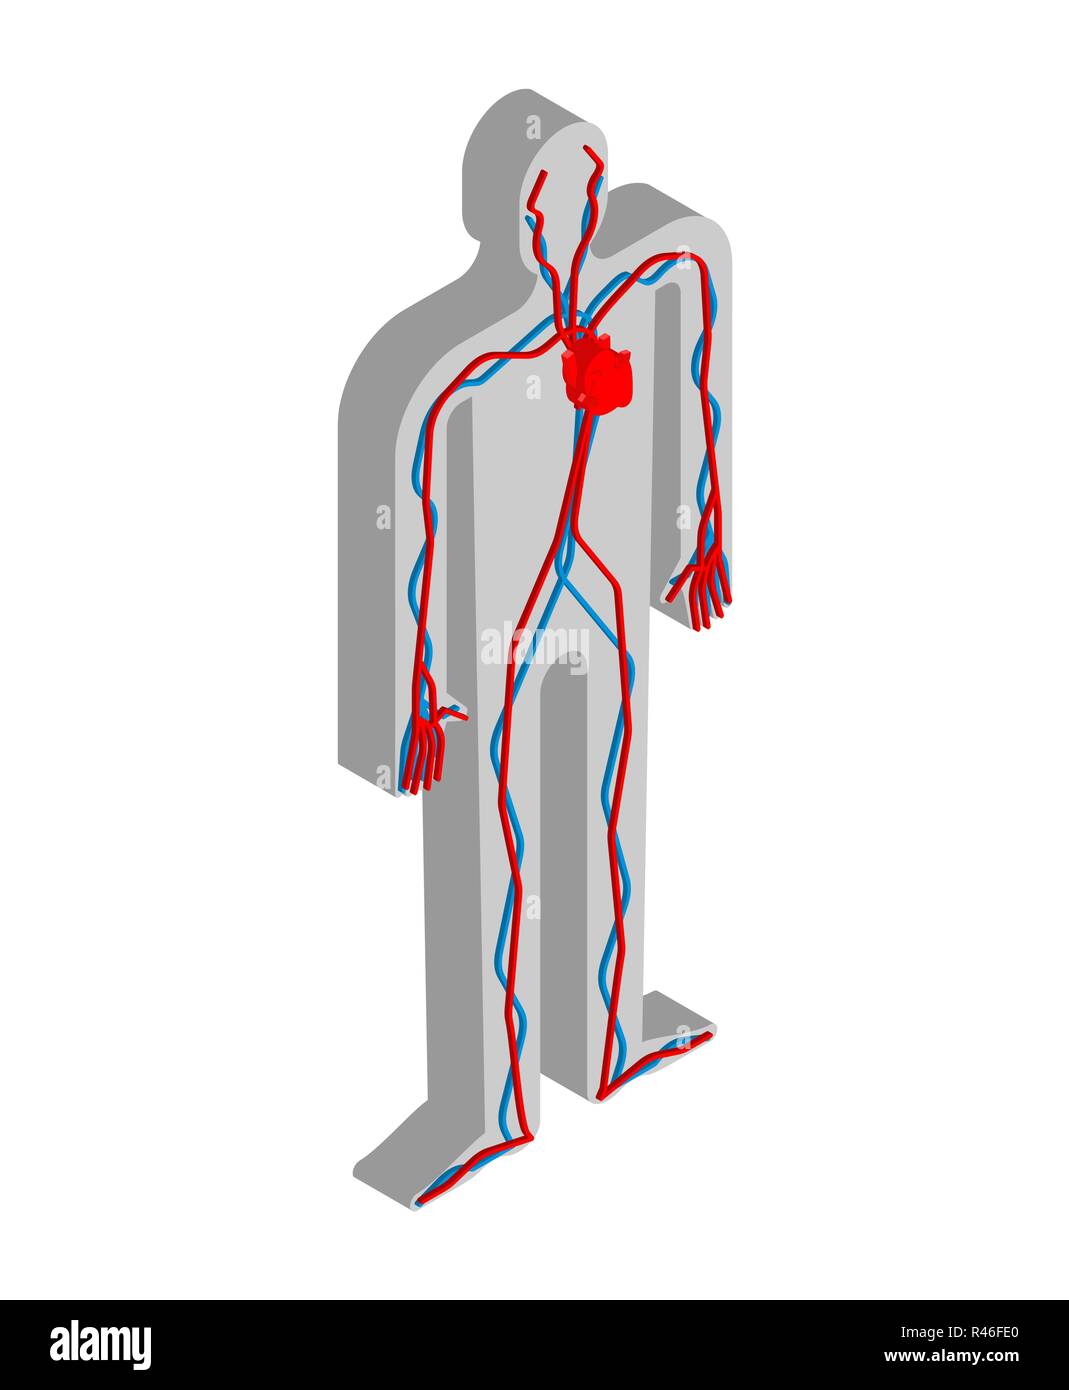 Herz und Blutkreislauf isometrische Anatomie des menschlichen Körpers. Innere Organe 3 D. Organsysteme Körper Stock Vektor